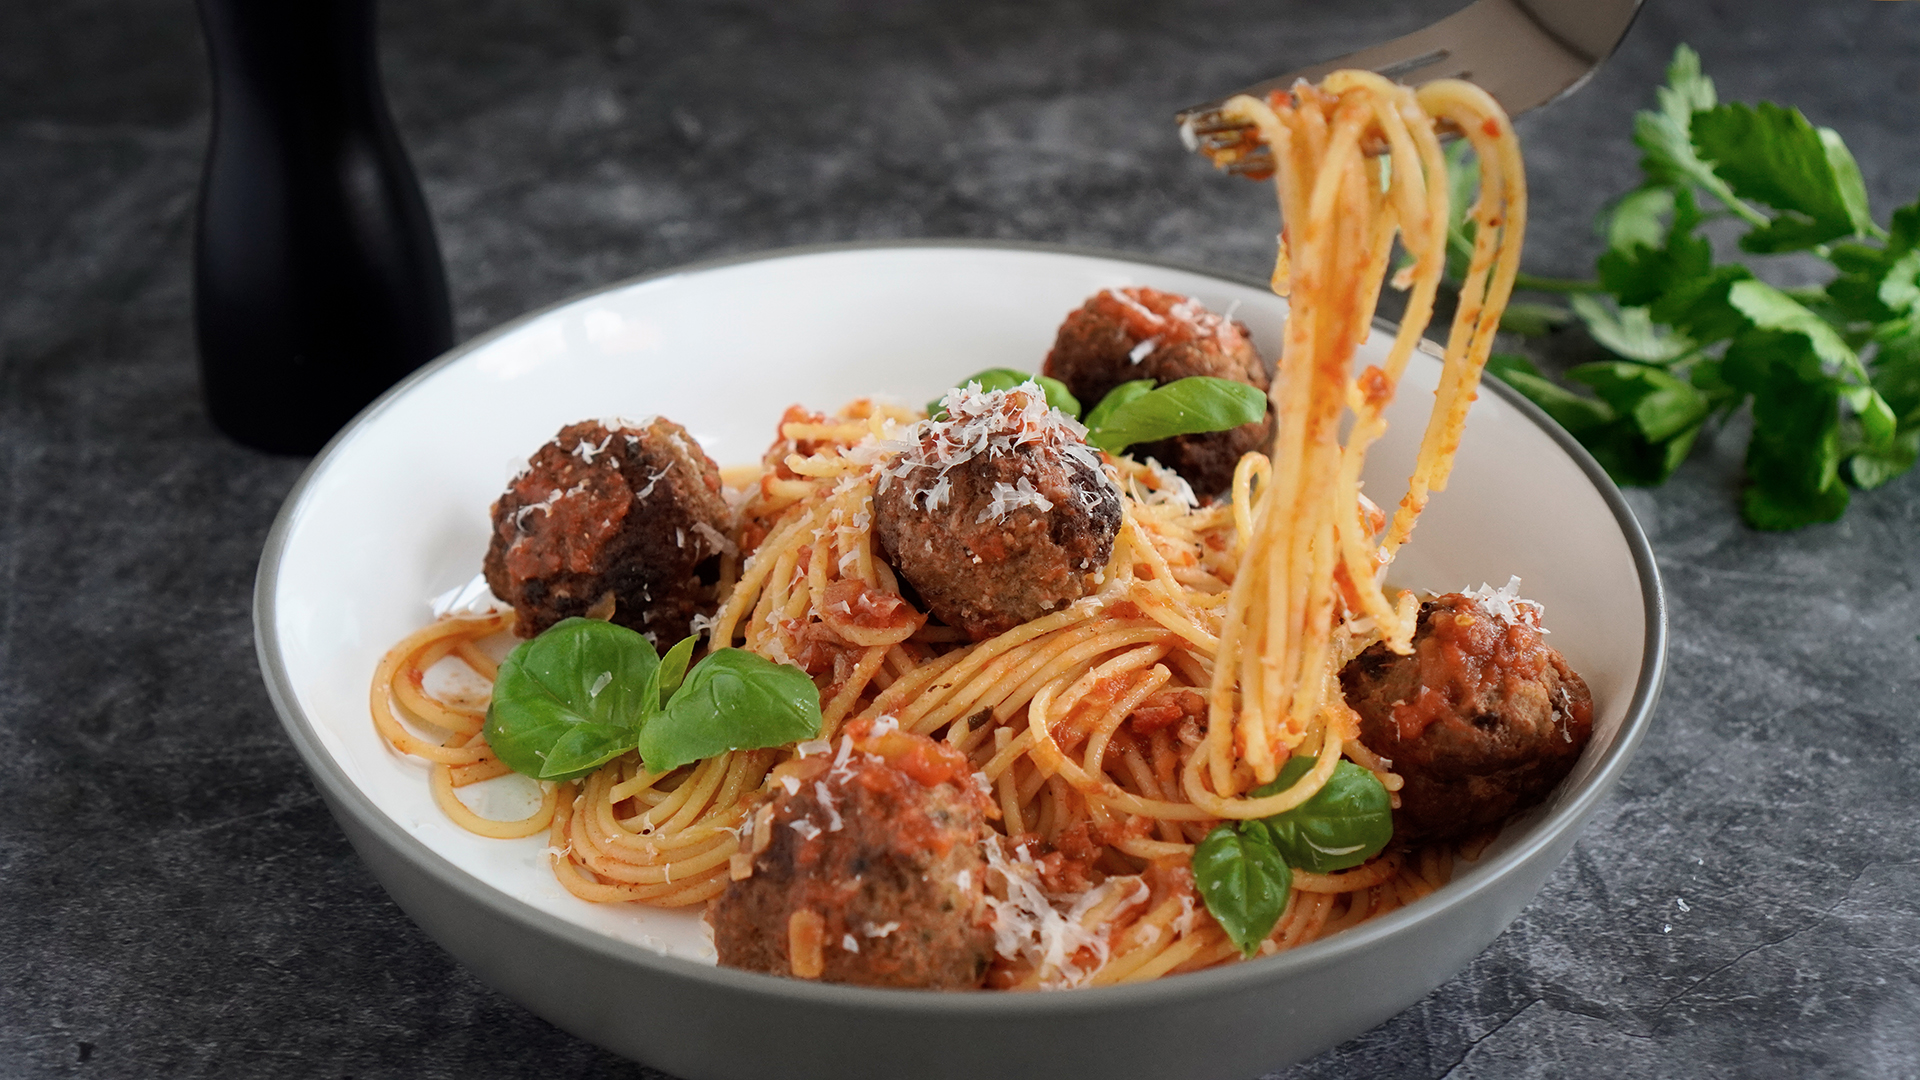 Spaghetti mit Hackbällchen - Meatballs